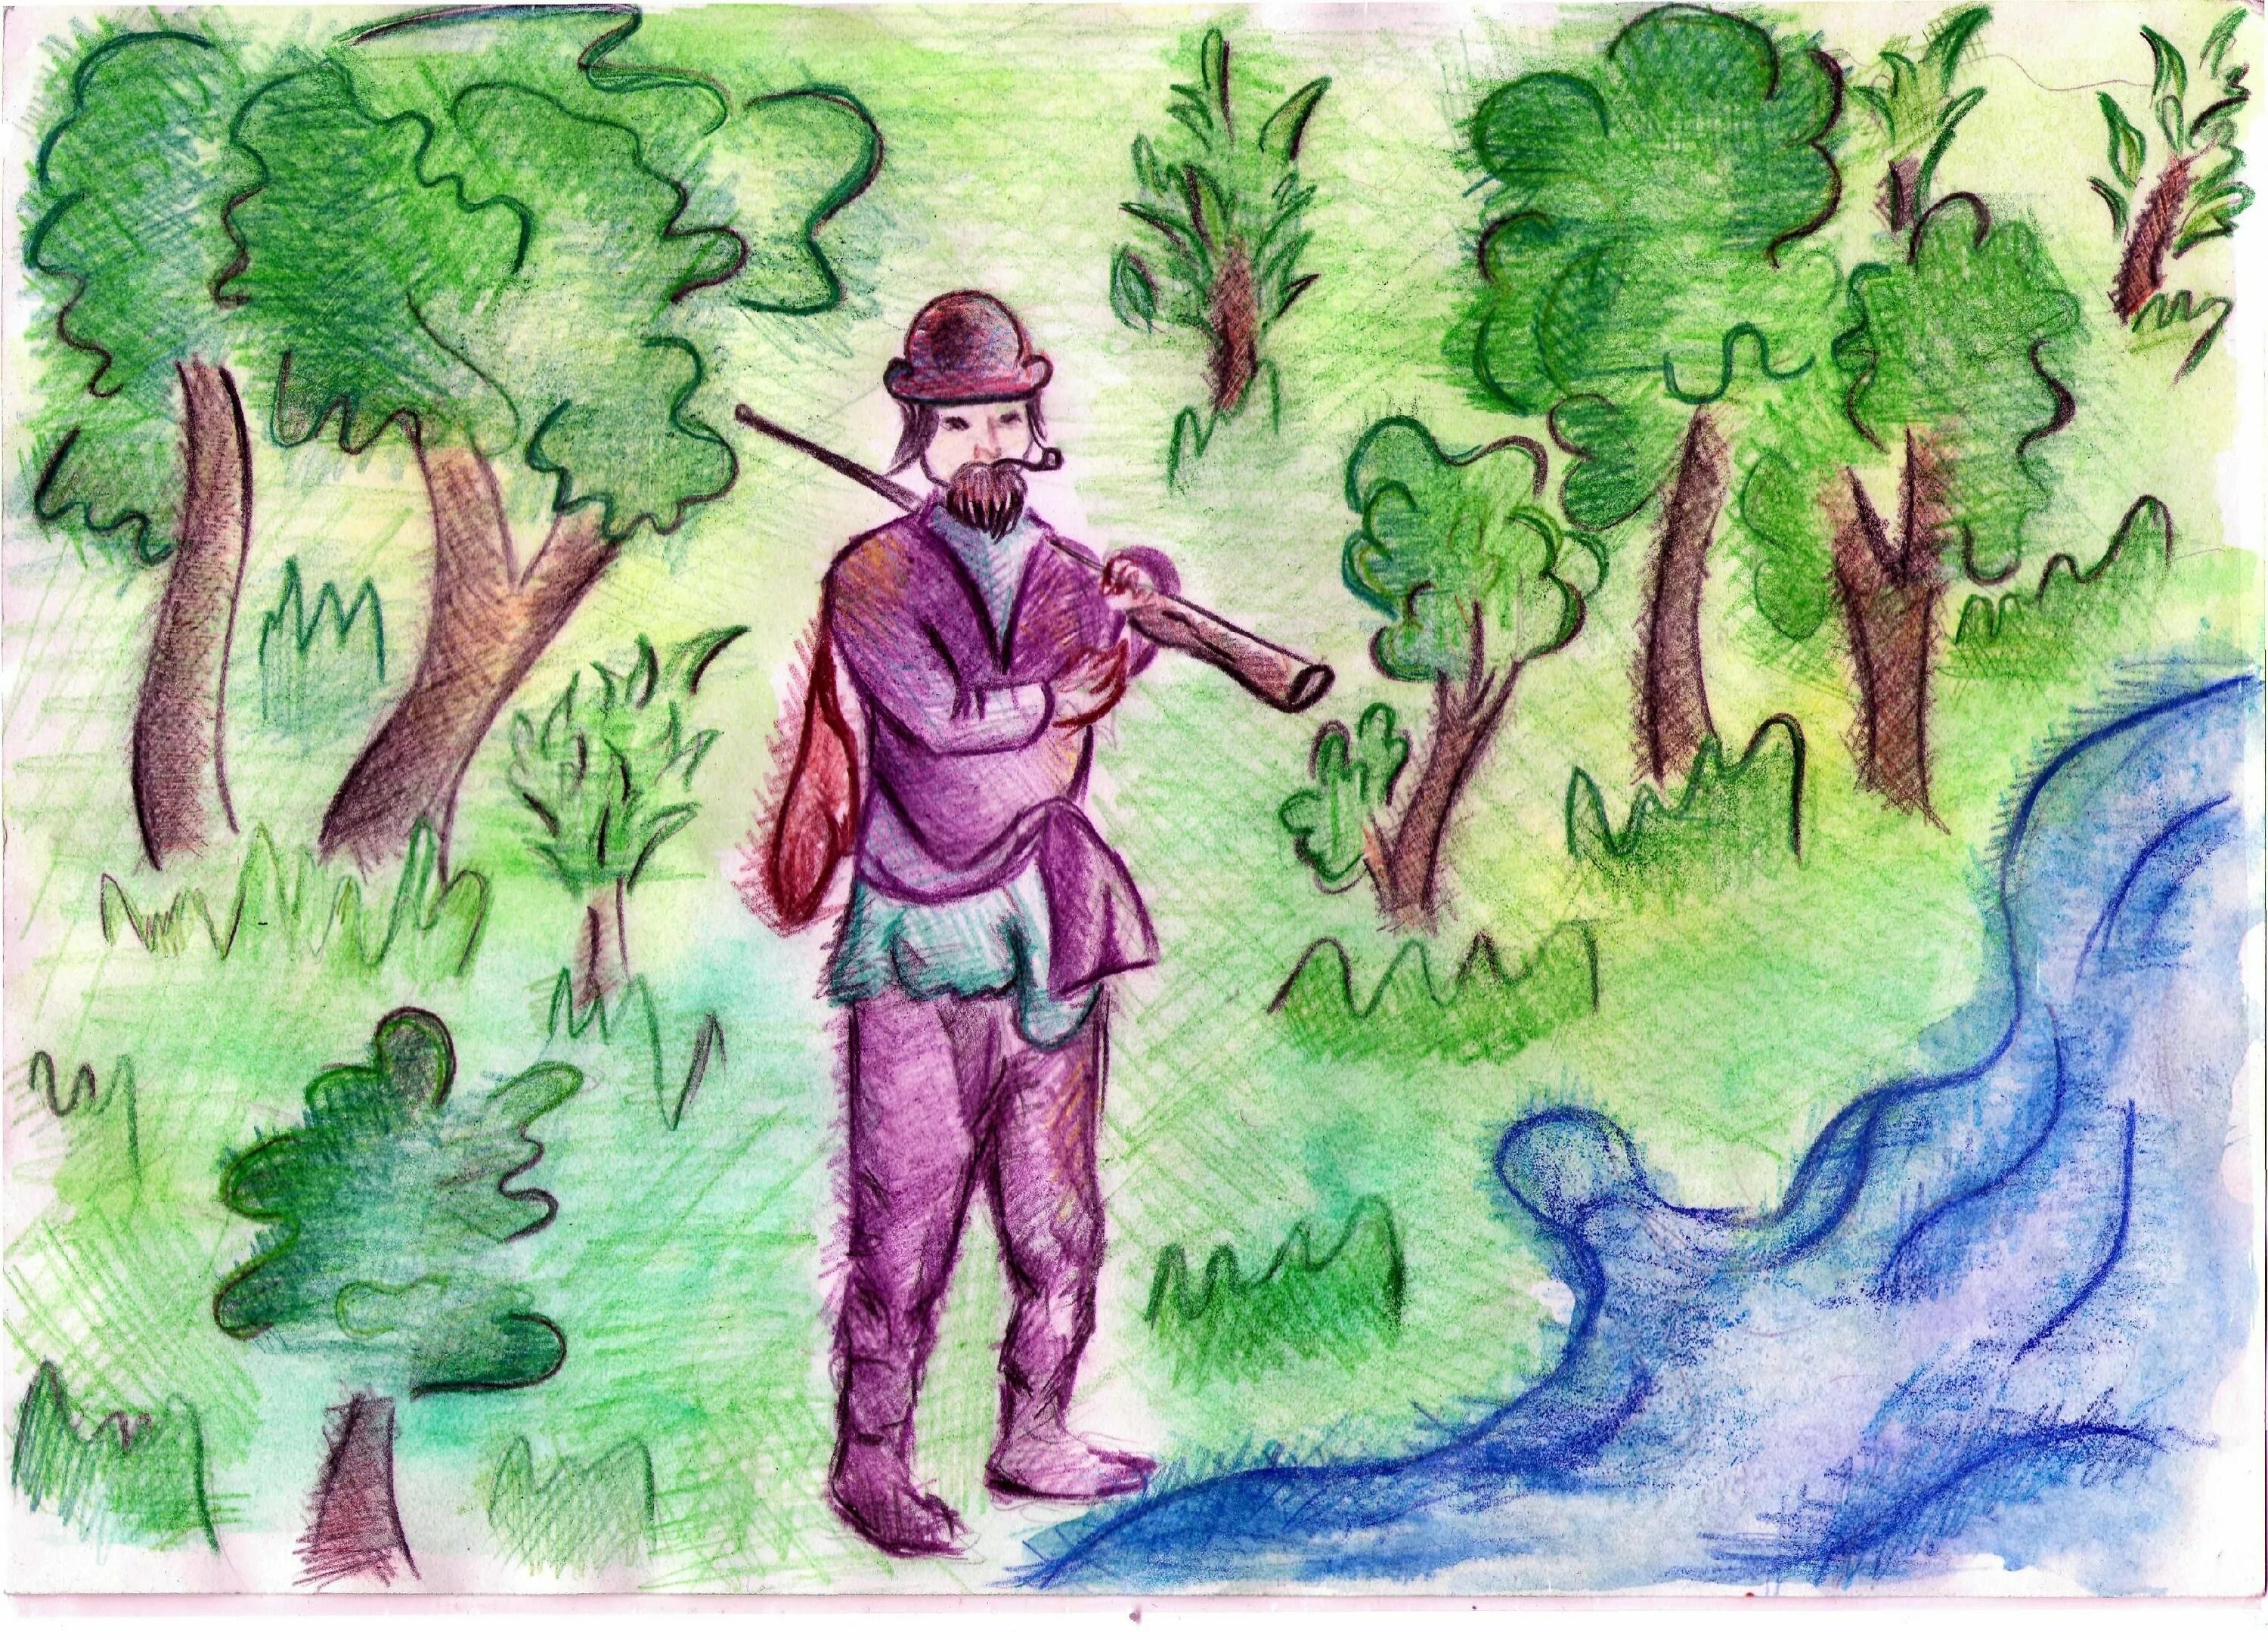 Иллюстрация к рассказу Маттео Фальконе. Иллюстрация к рассказу Васюткино озеро. Маттео Фальконе рисунки к произведению. Иллюстрация Васюткино озеро 5 класс. Васюткино озеро маршрут васютки рисунок